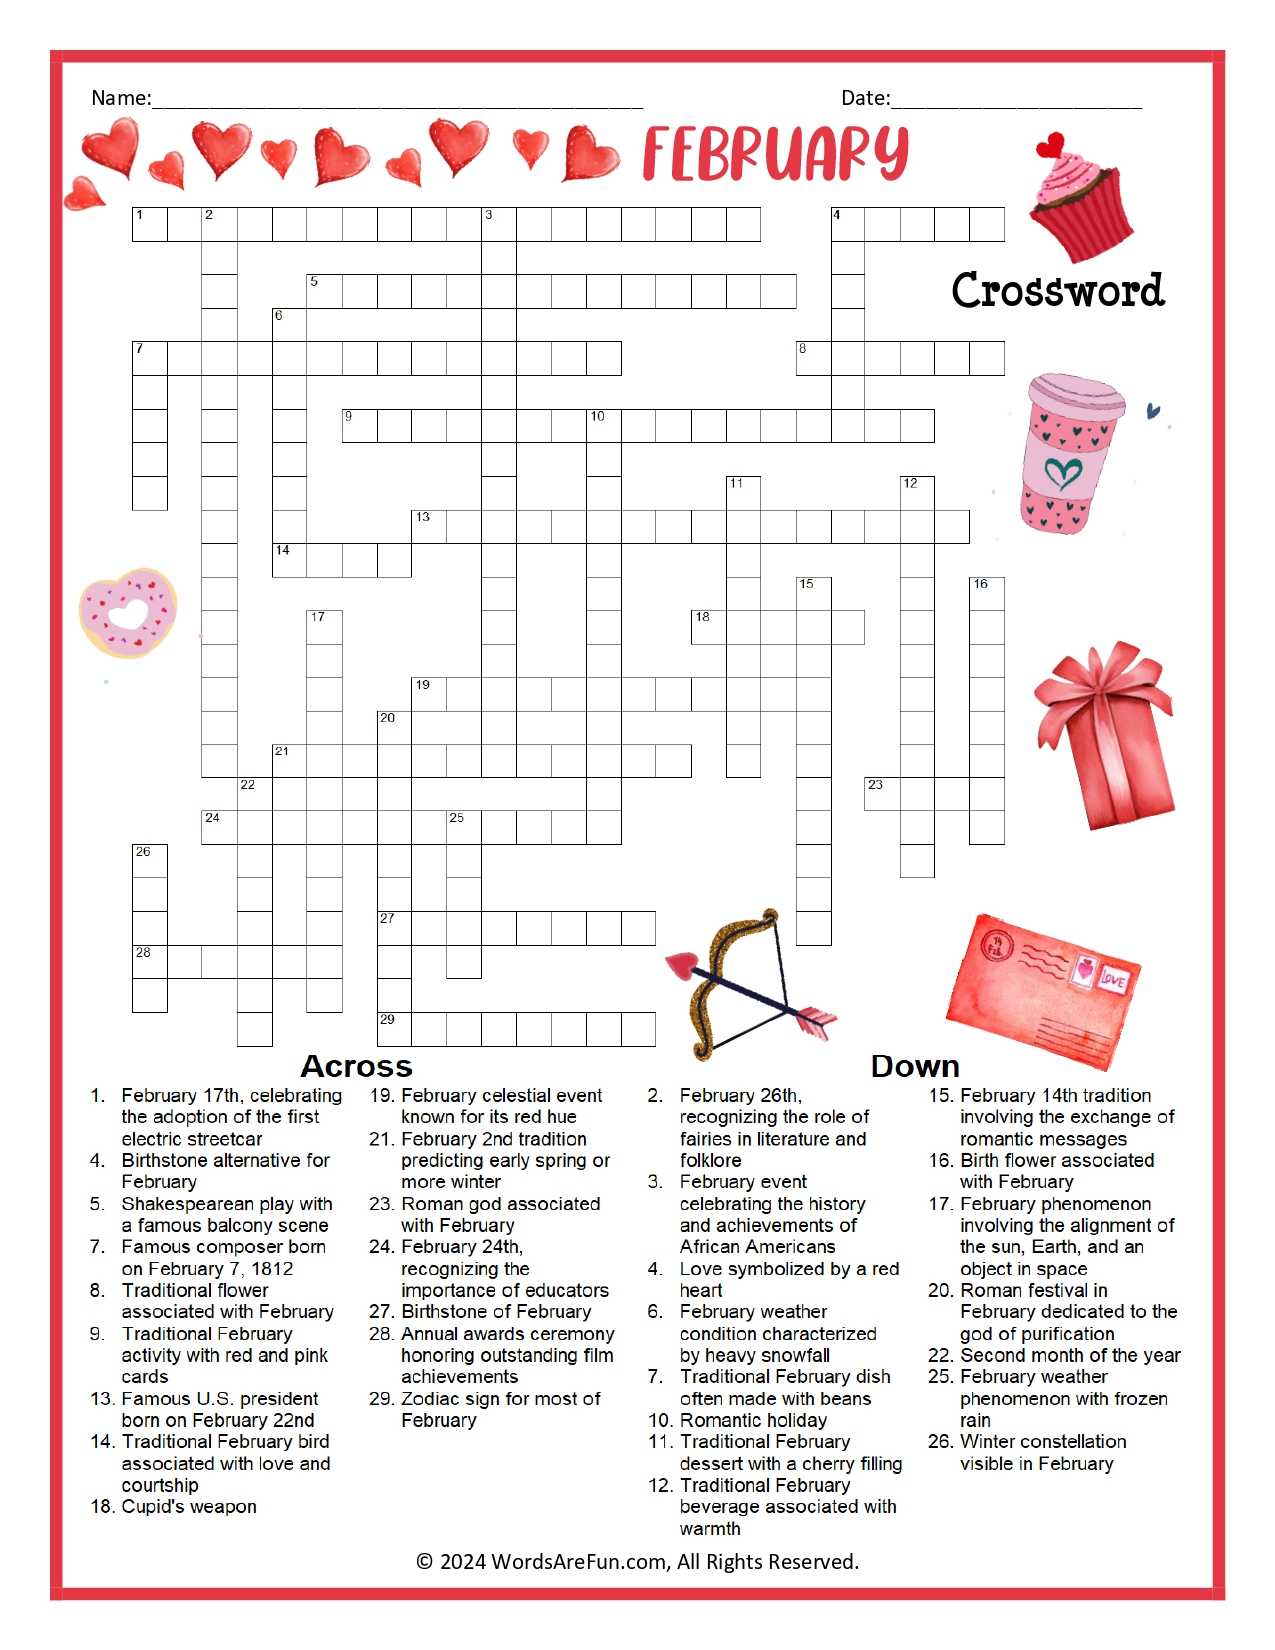 February Crossword Puzzle